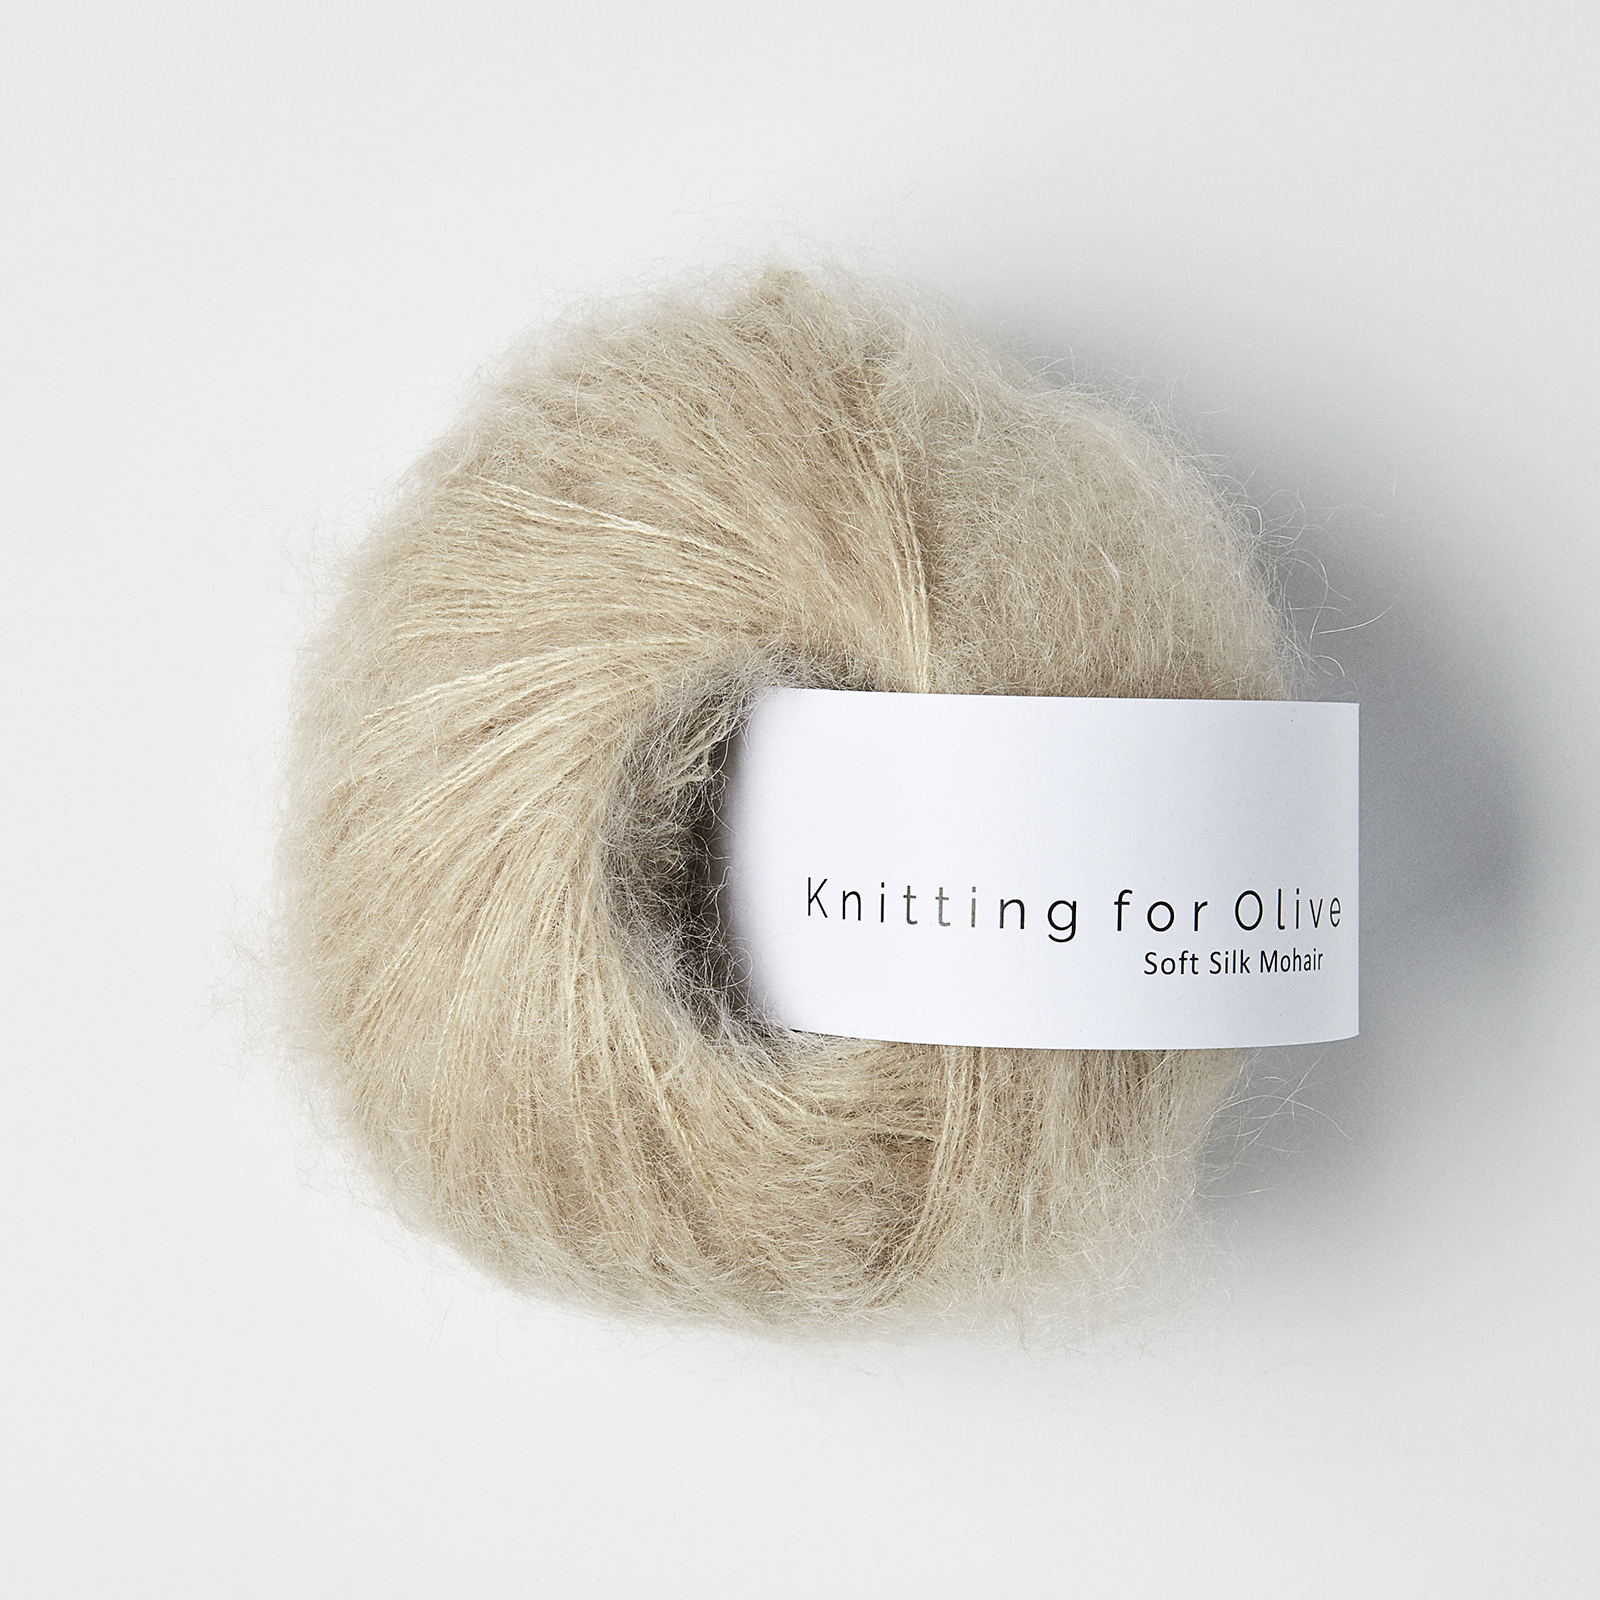 soft silk mohair knitting for olive | soft silk mohair: oat